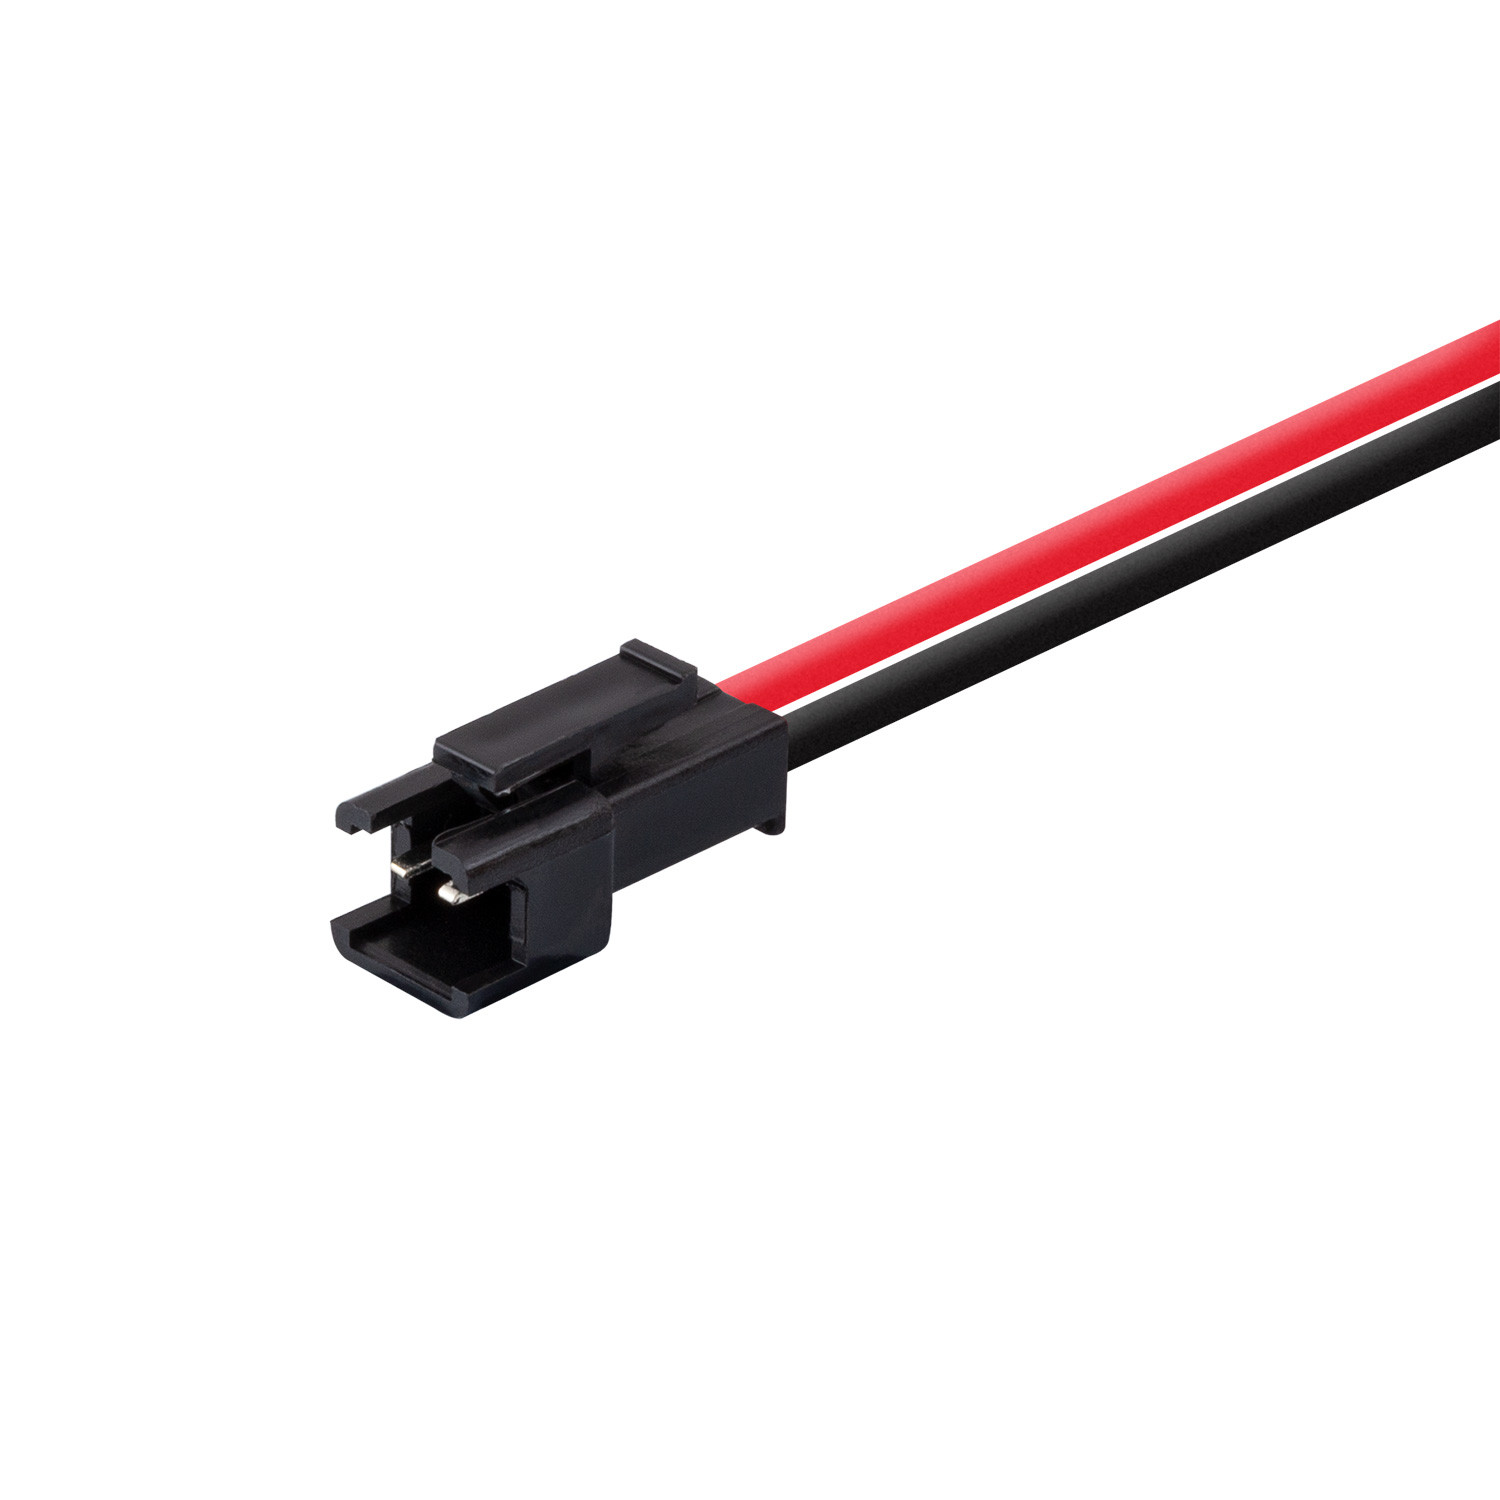 Product van Mannelijke connector kabel voor LED strips